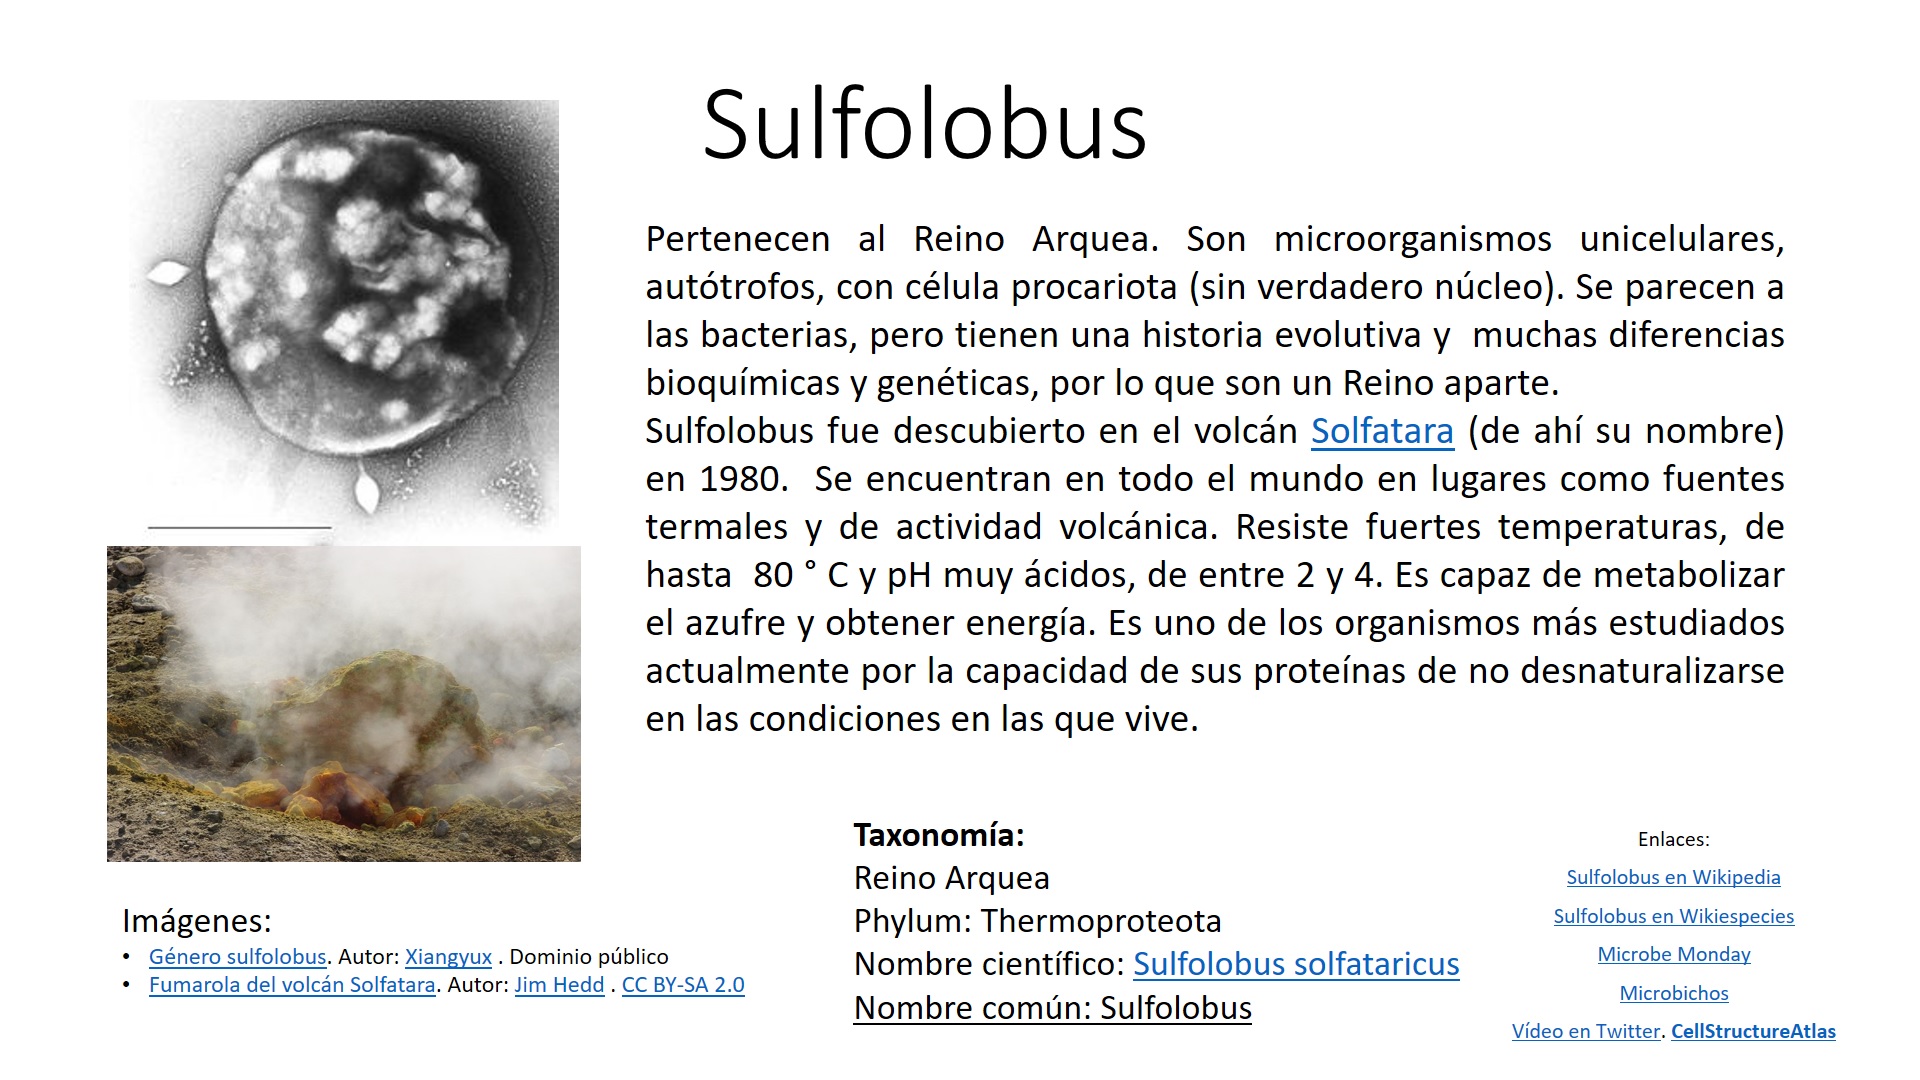 Ficha de la arqueobacteria Sulfolobus